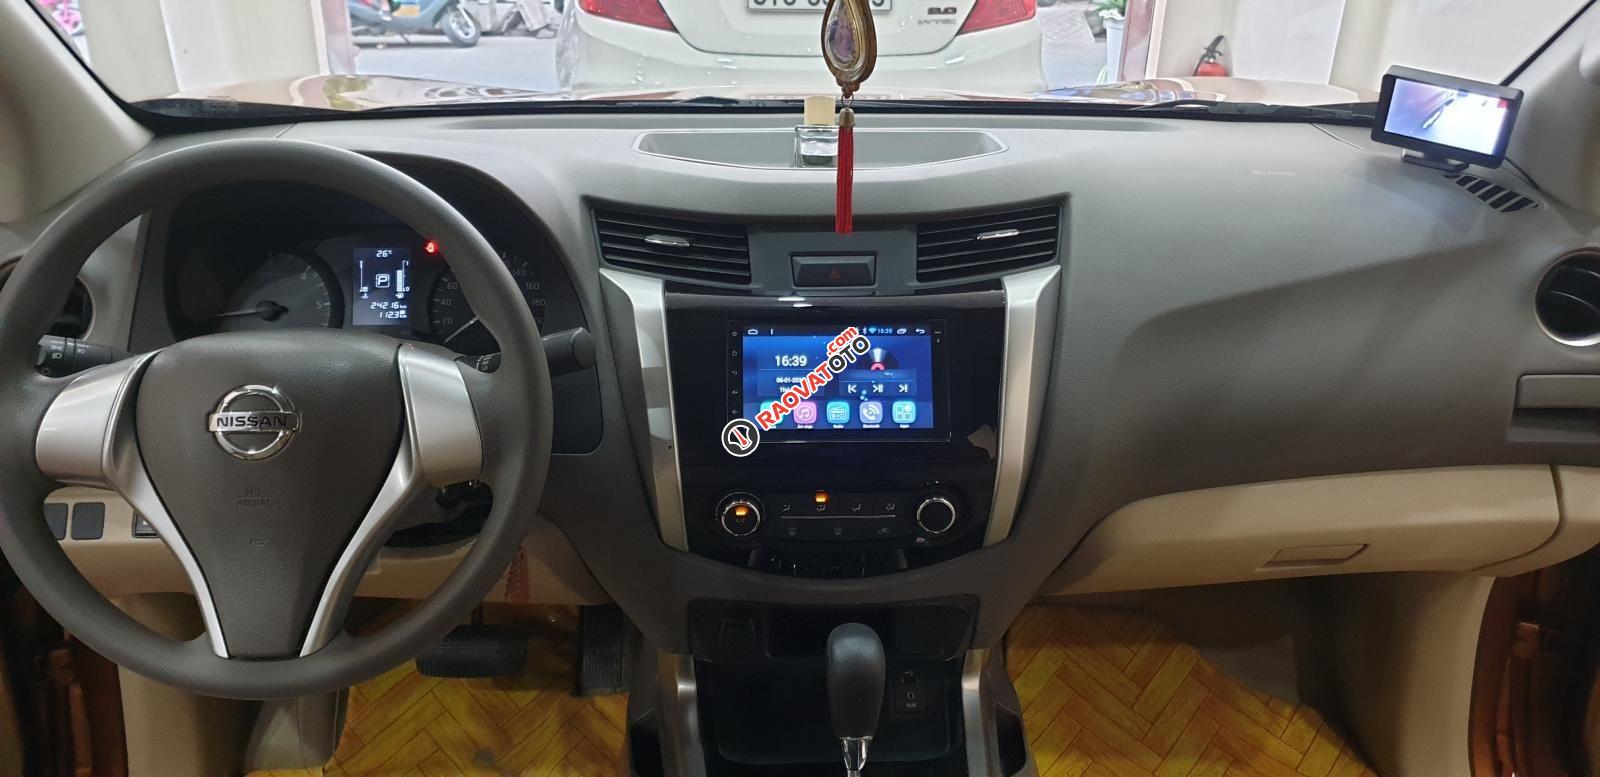 Bán Nissan Navara EL Premium R nhập khẩu dầu 2.5 số tự động, đk T3/2018 màu cam, đẹp mới 95%-0